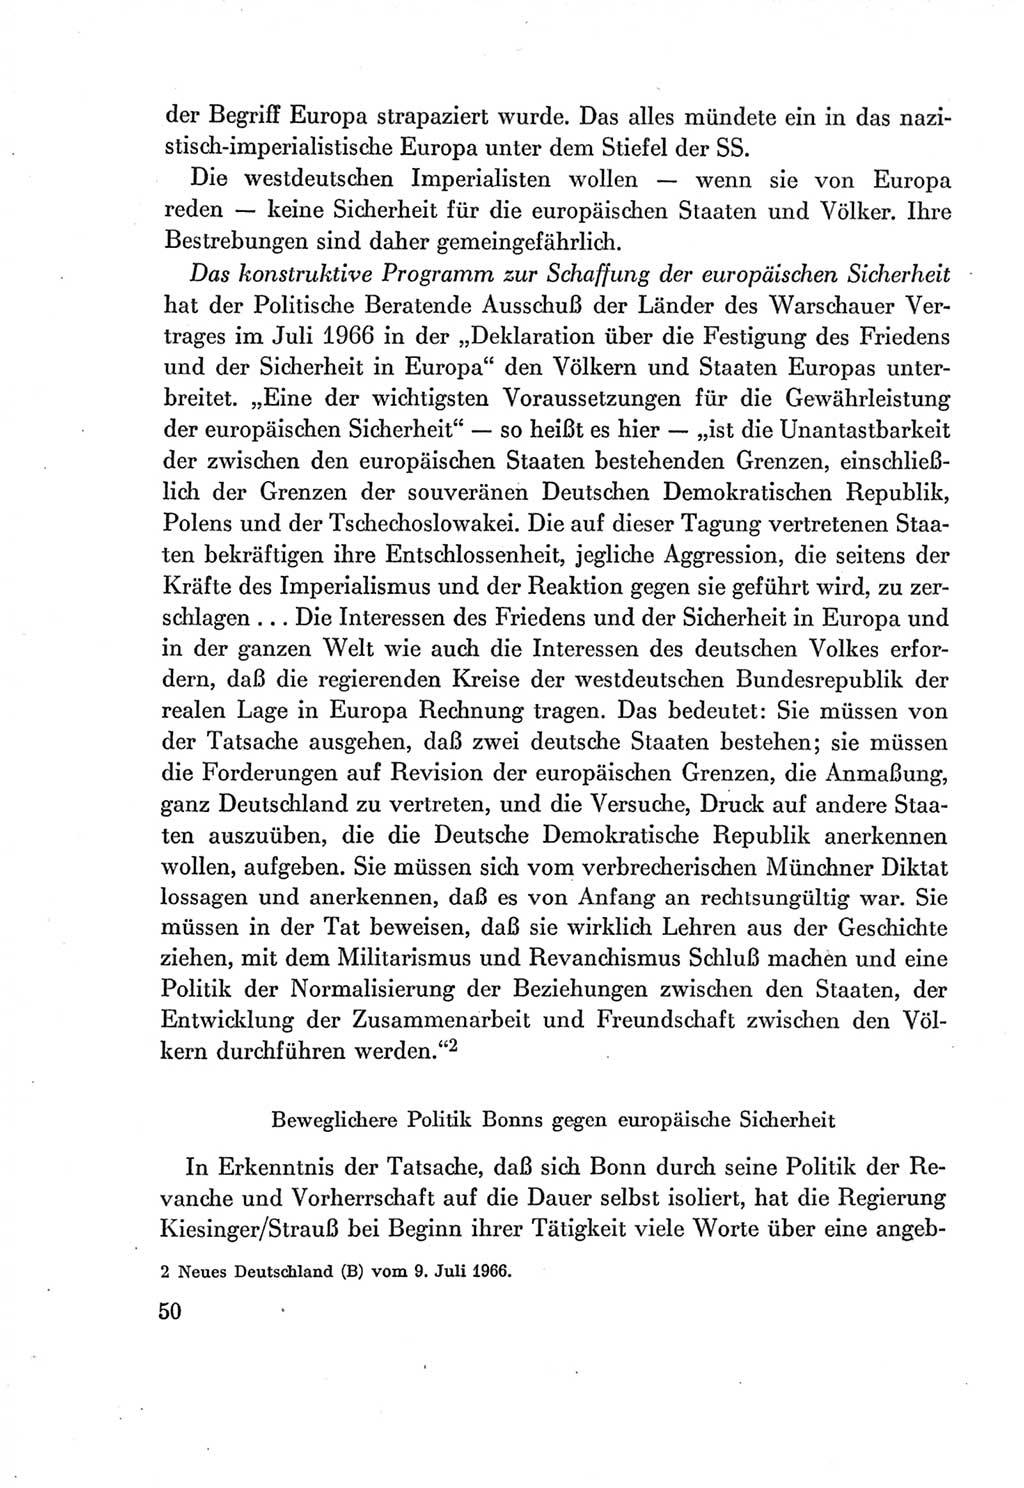 Protokoll der Verhandlungen des Ⅶ. Parteitages der Sozialistischen Einheitspartei Deutschlands (SED) [Deutsche Demokratische Republik (DDR)] 1967, Band Ⅰ, Seite 50 (Prot. Verh. Ⅶ. PT SED DDR 1967, Bd. Ⅰ, S. 50)